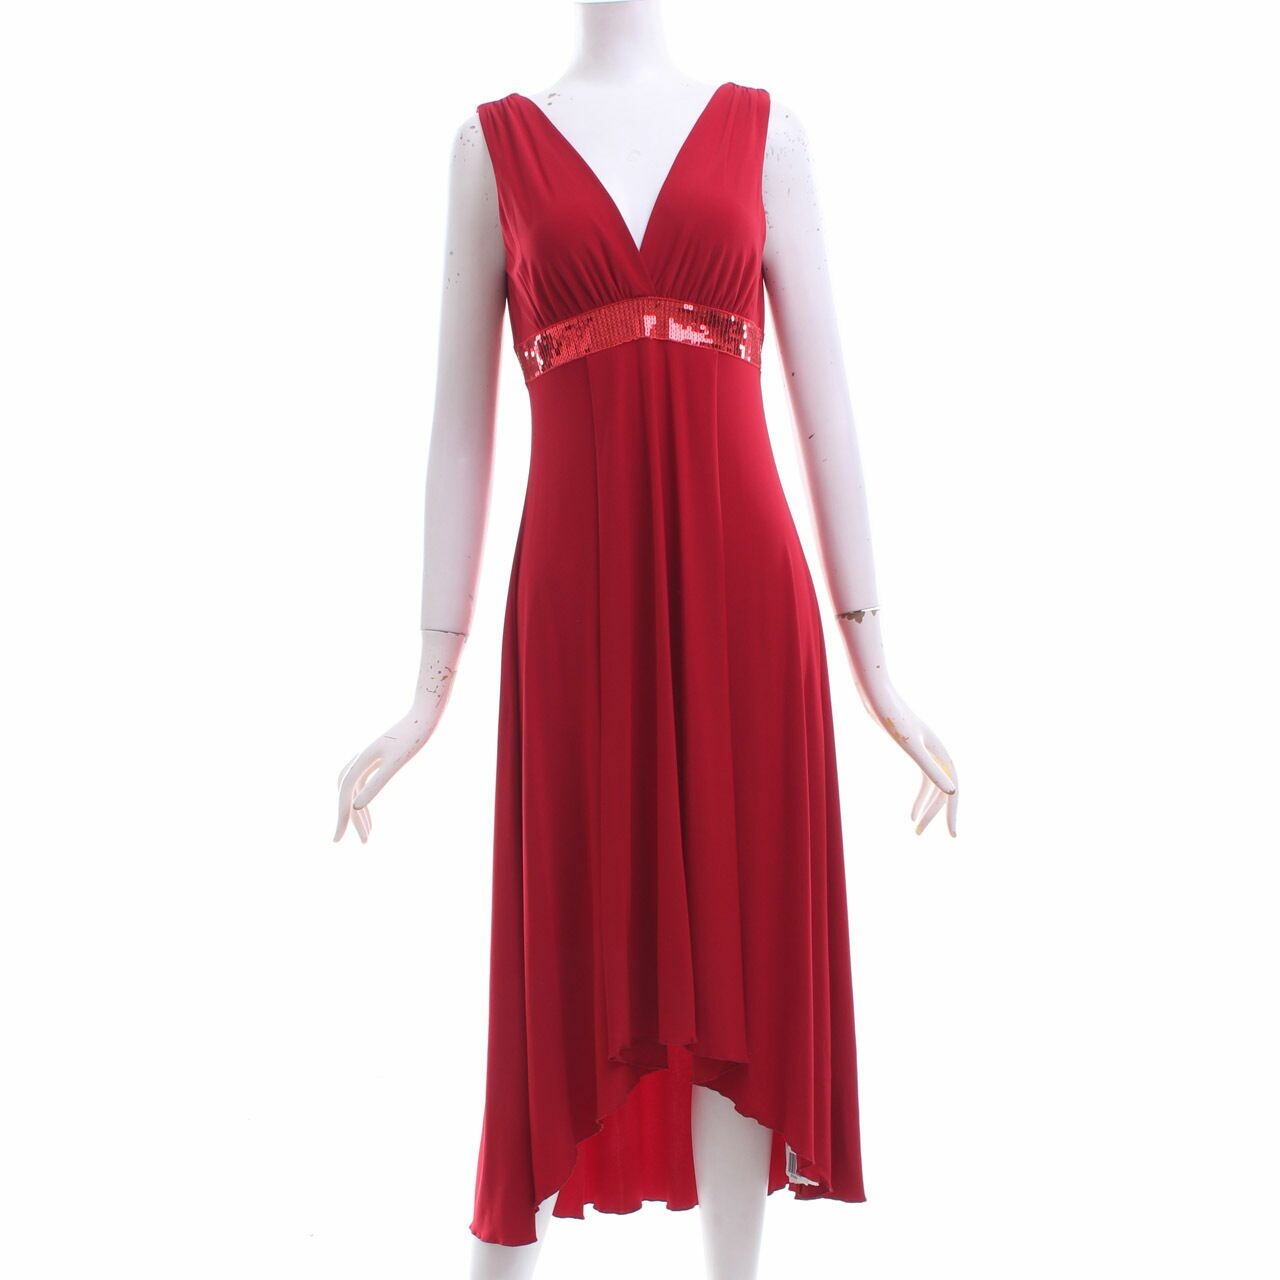 TheoryX Red Midi Dress